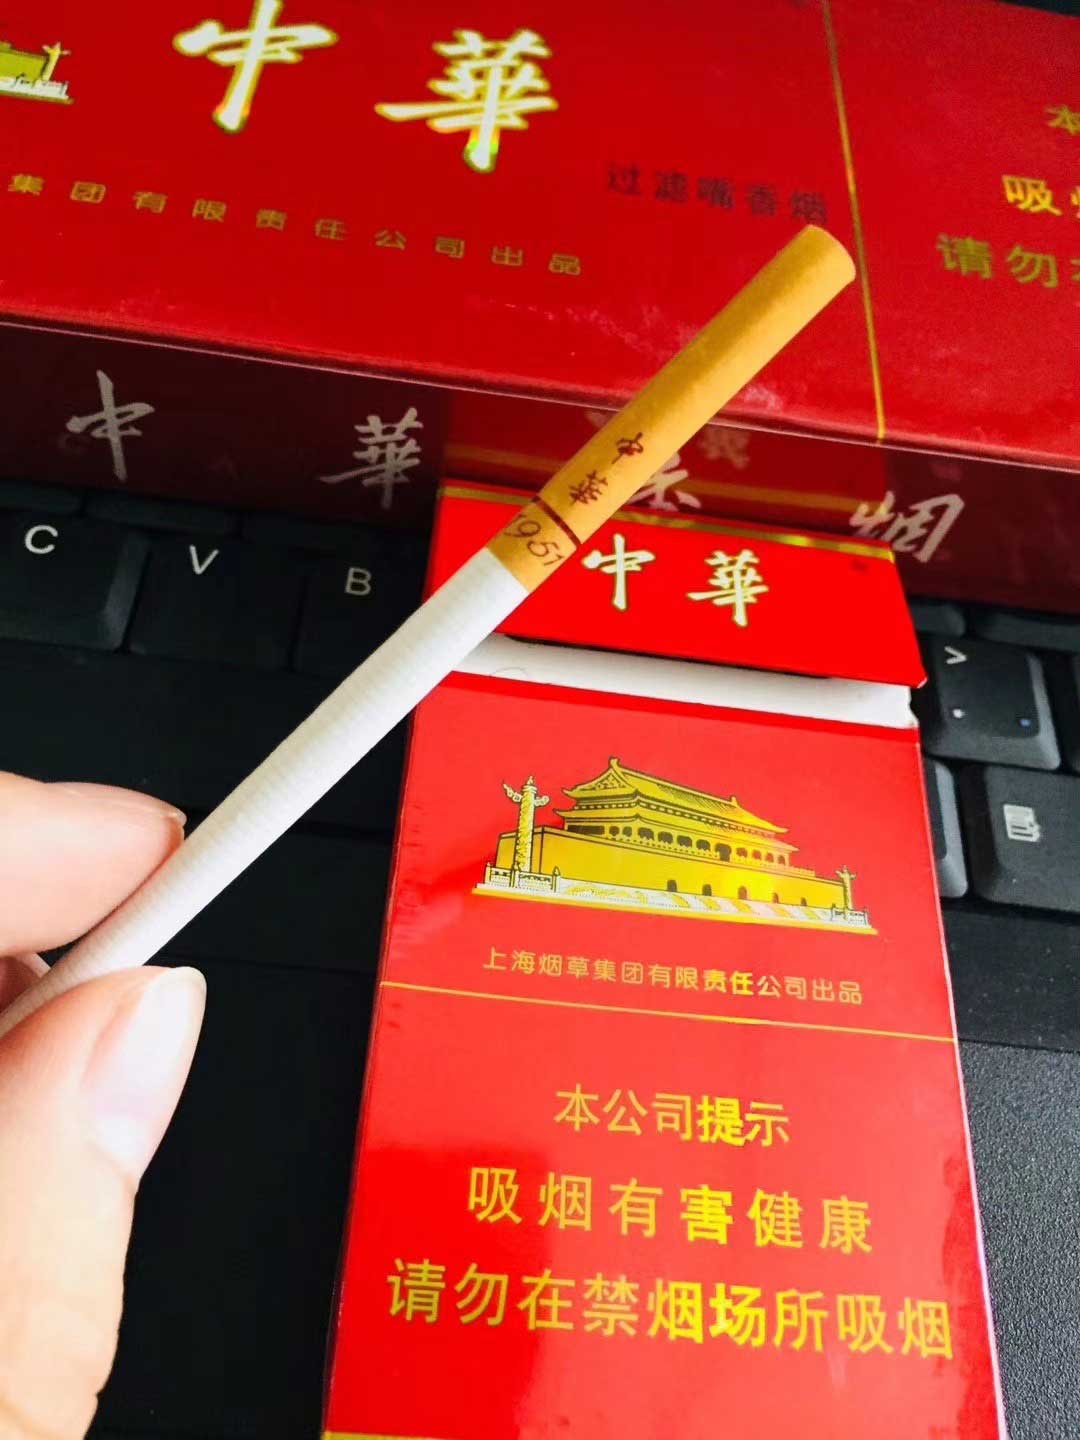 卖烟的微商_金圣烟缘微信卖中华一条180元